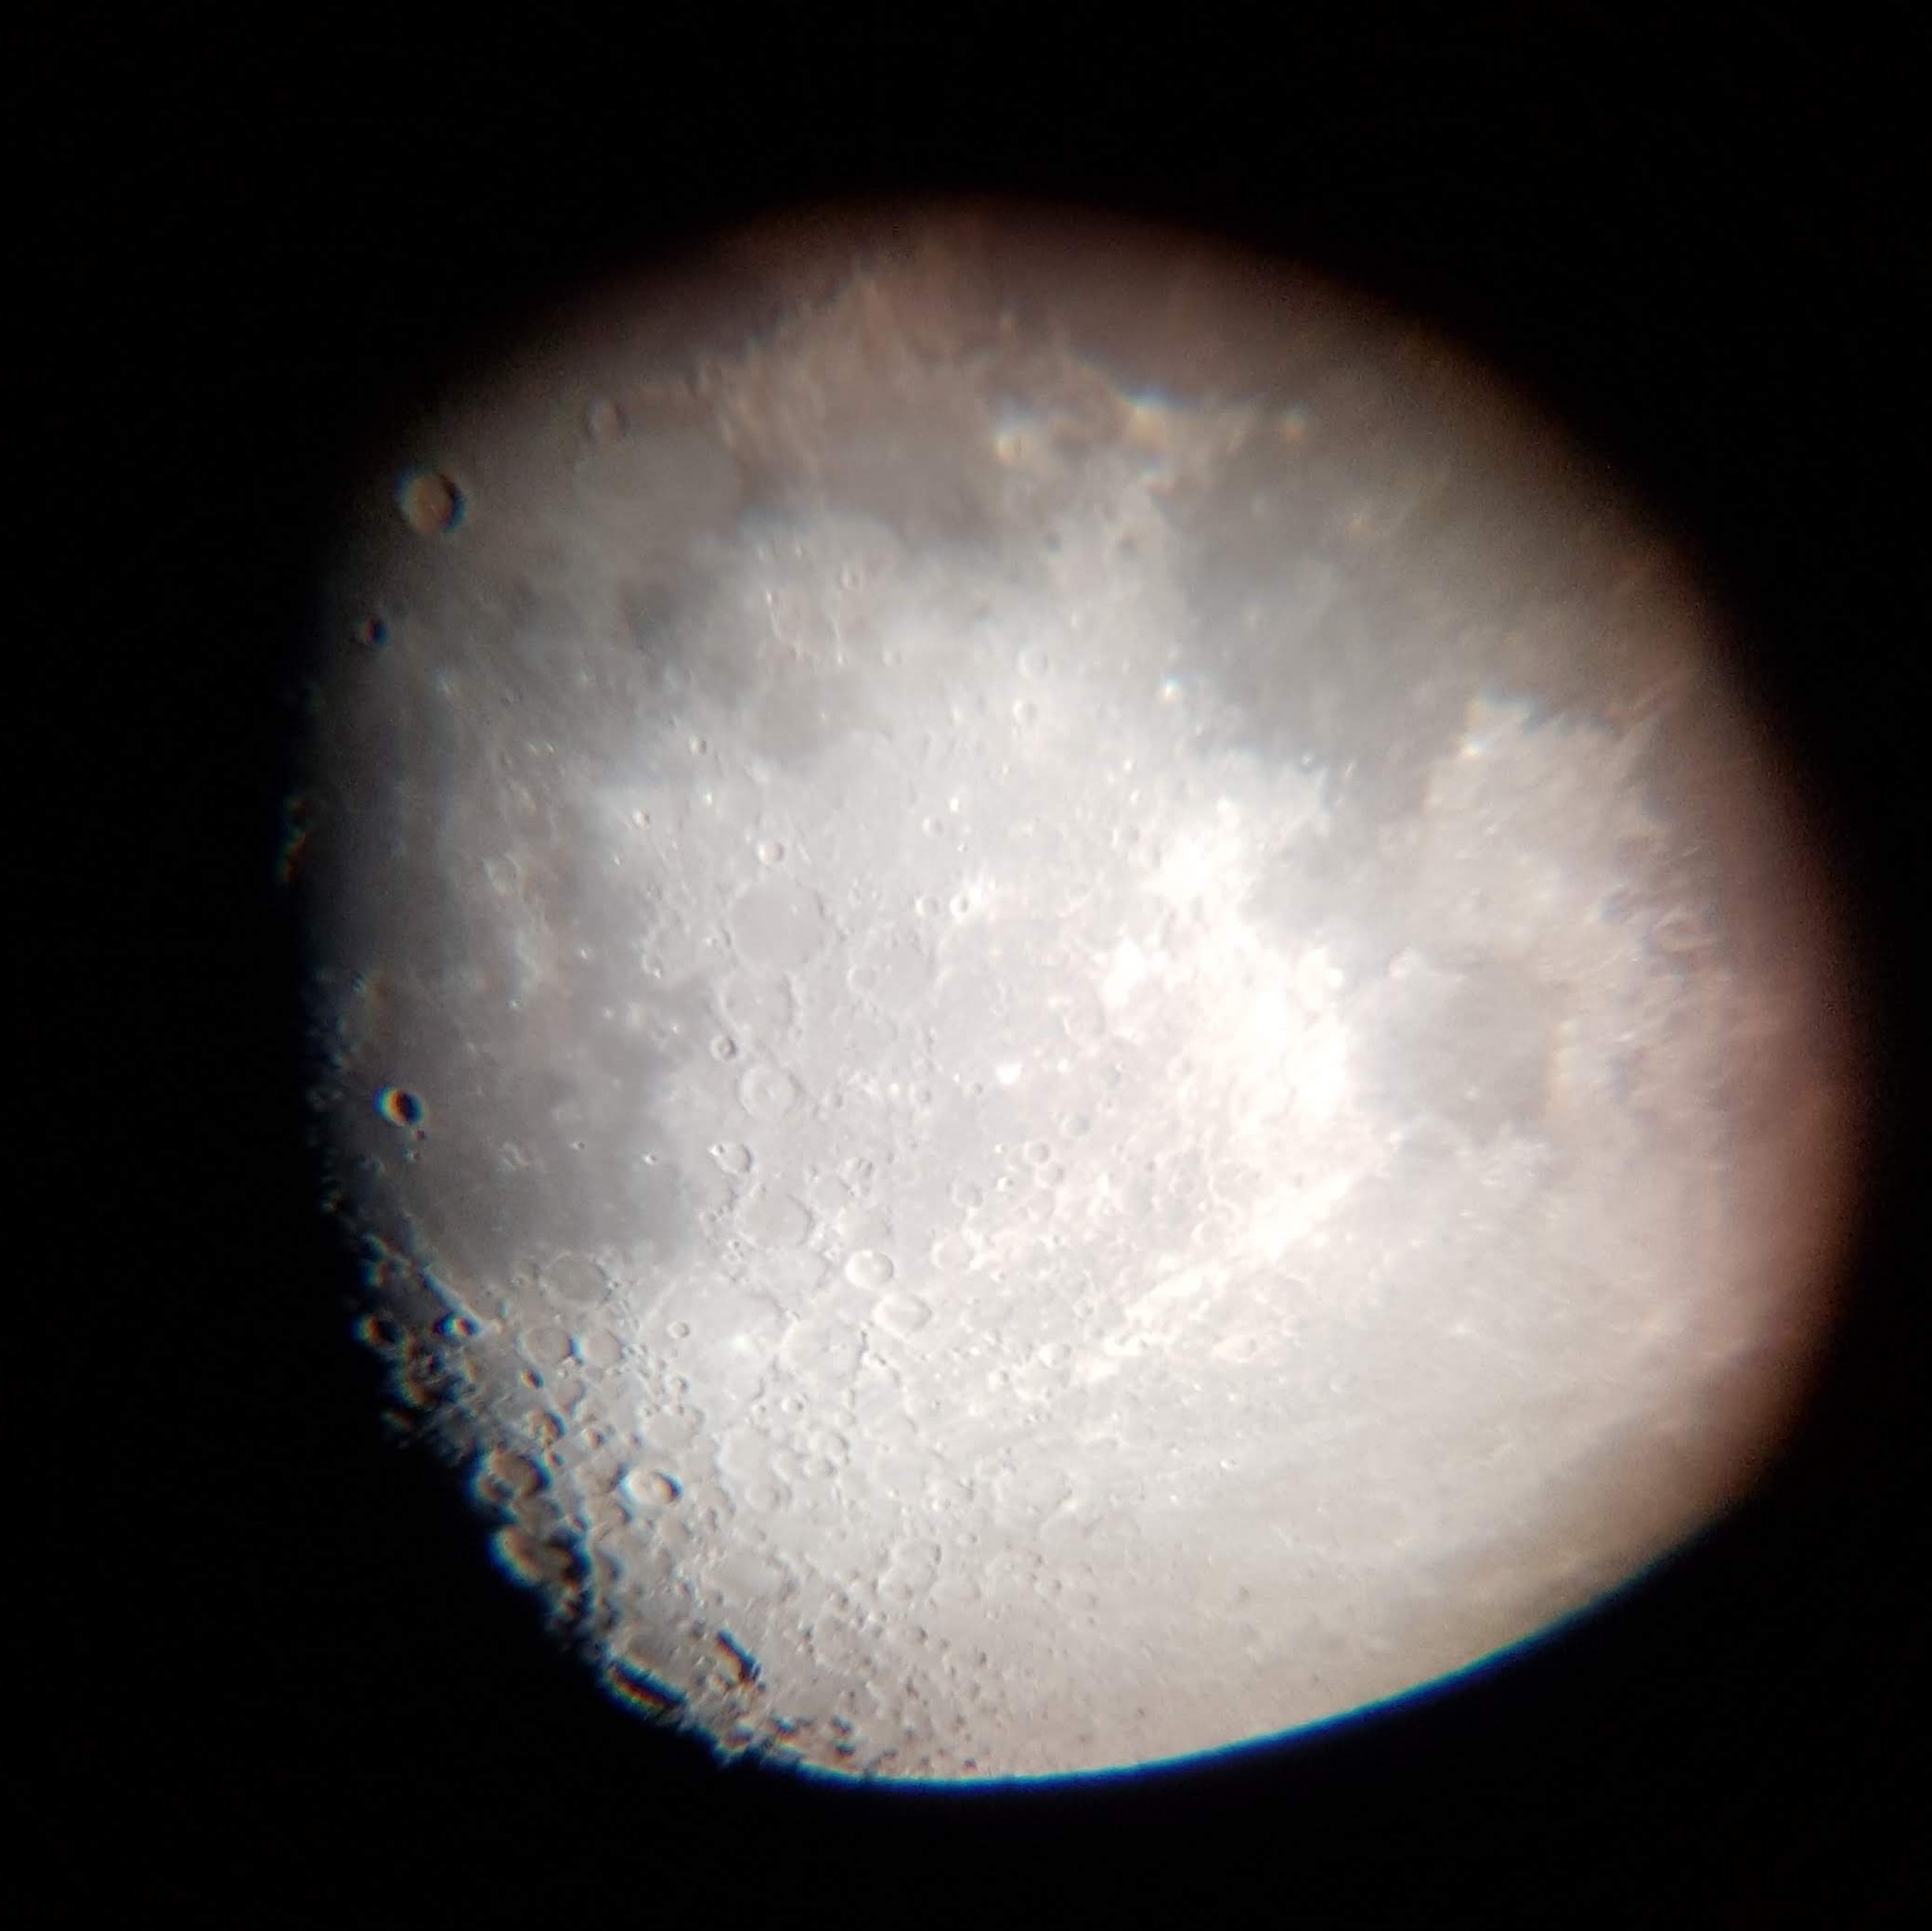 Lune observée le 15 octobre 2021 au 10mm sur notre téléscope, photographiée avec le téléphone mobile